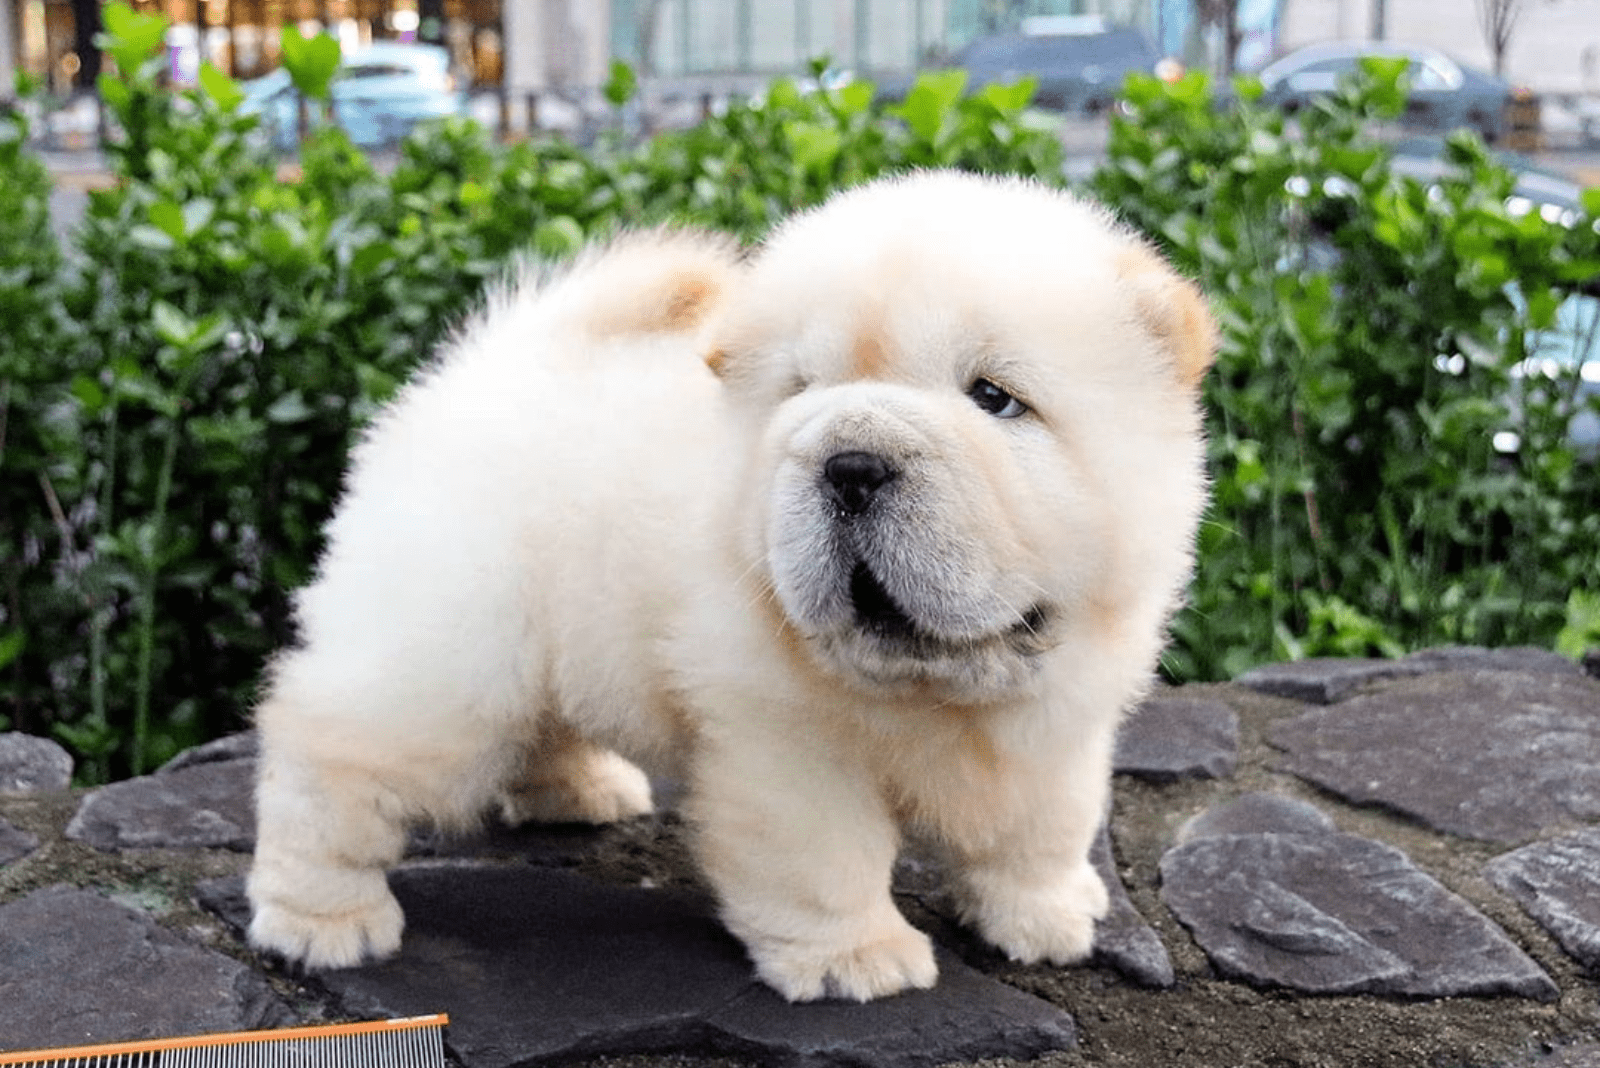 Mini Chow Chow — The Miniature Teddy Bear Dog